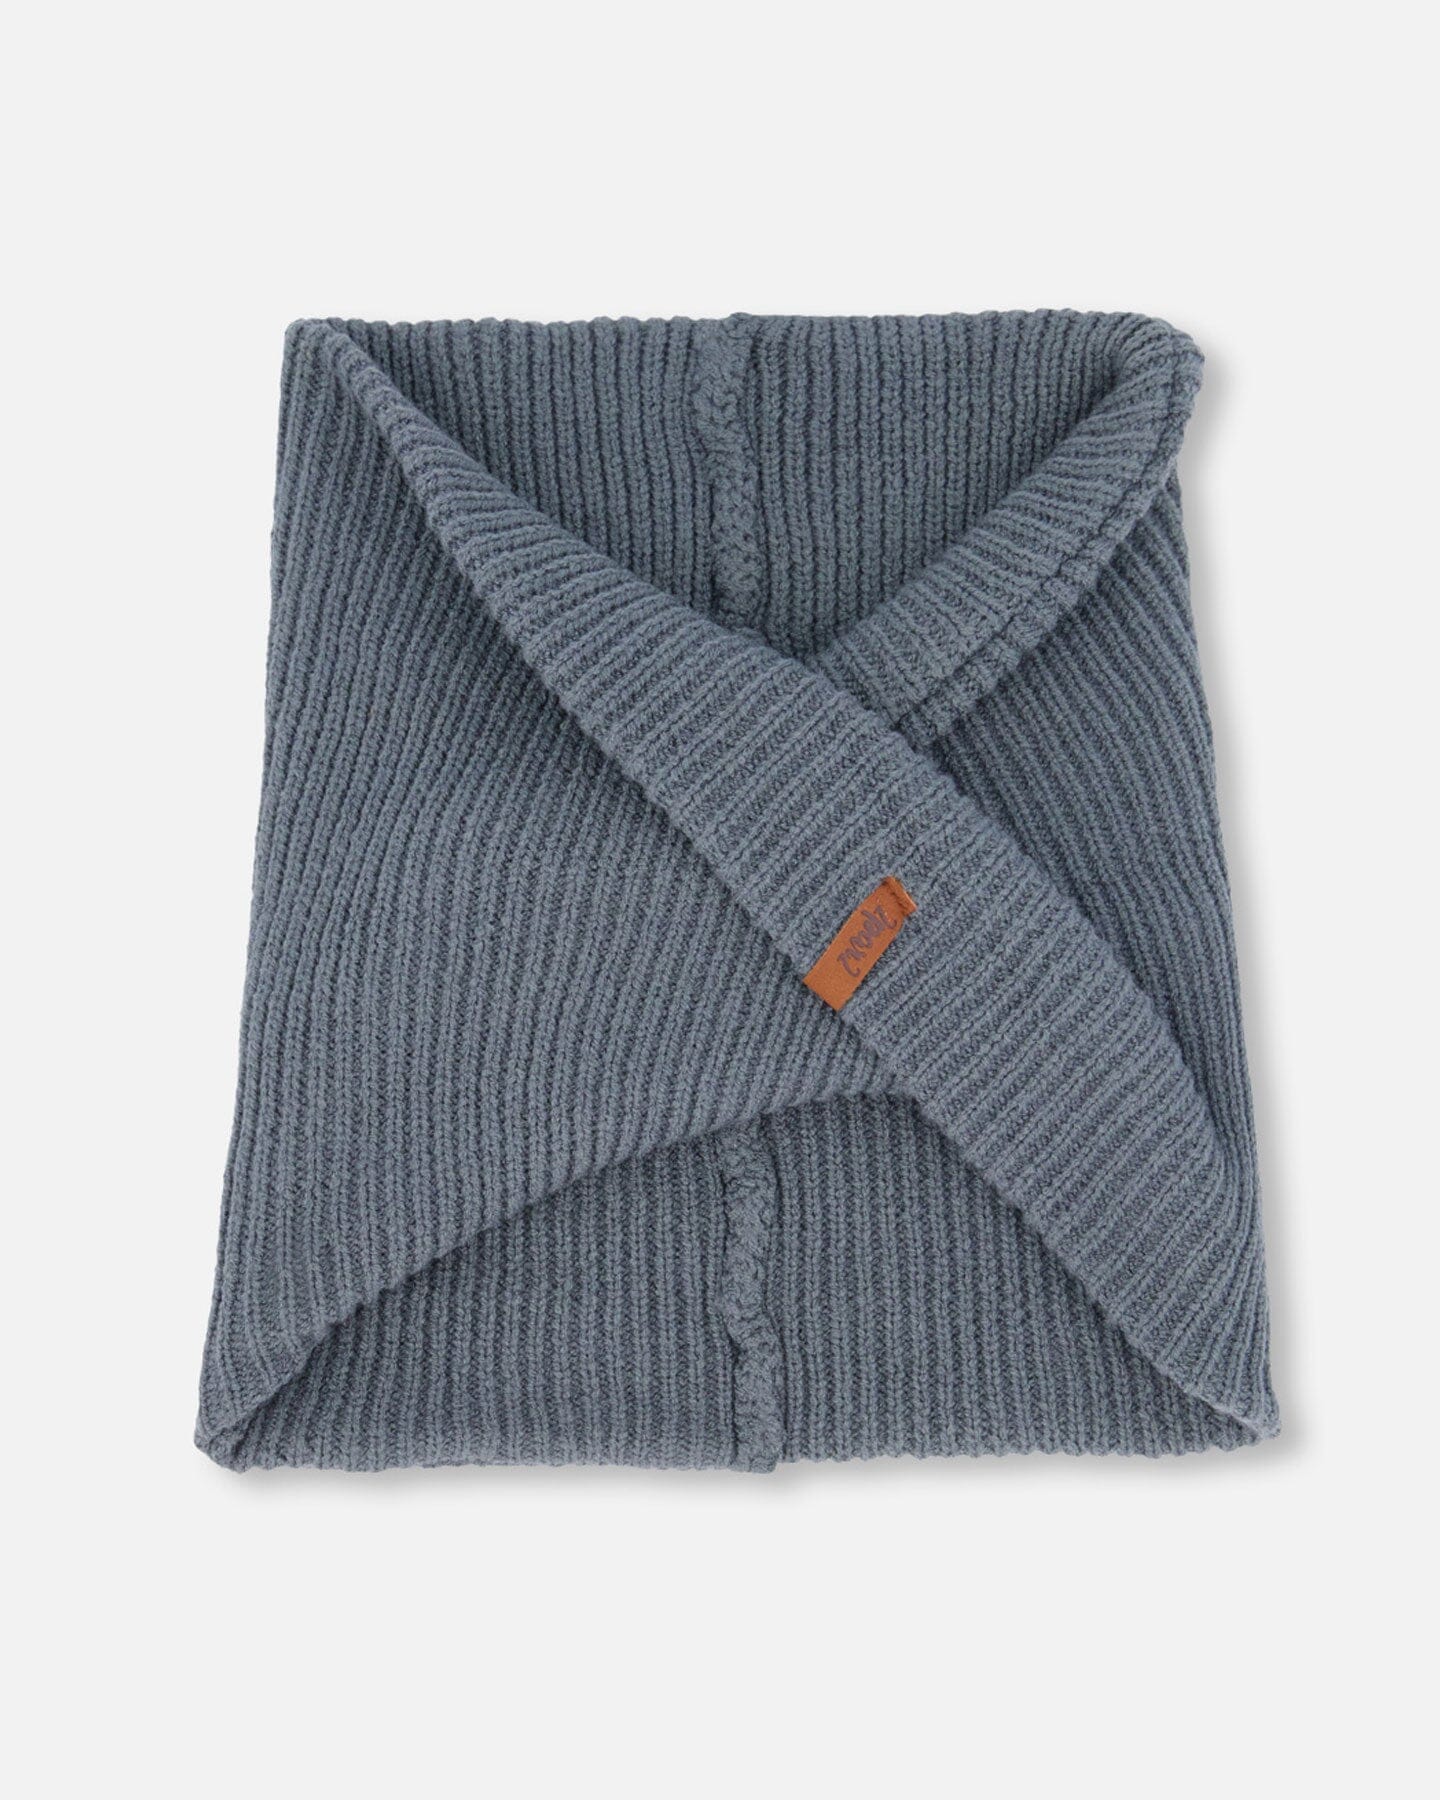 Cache-cou en tricot extensible, 2-6 ans, Noir. Colour: black, Fr